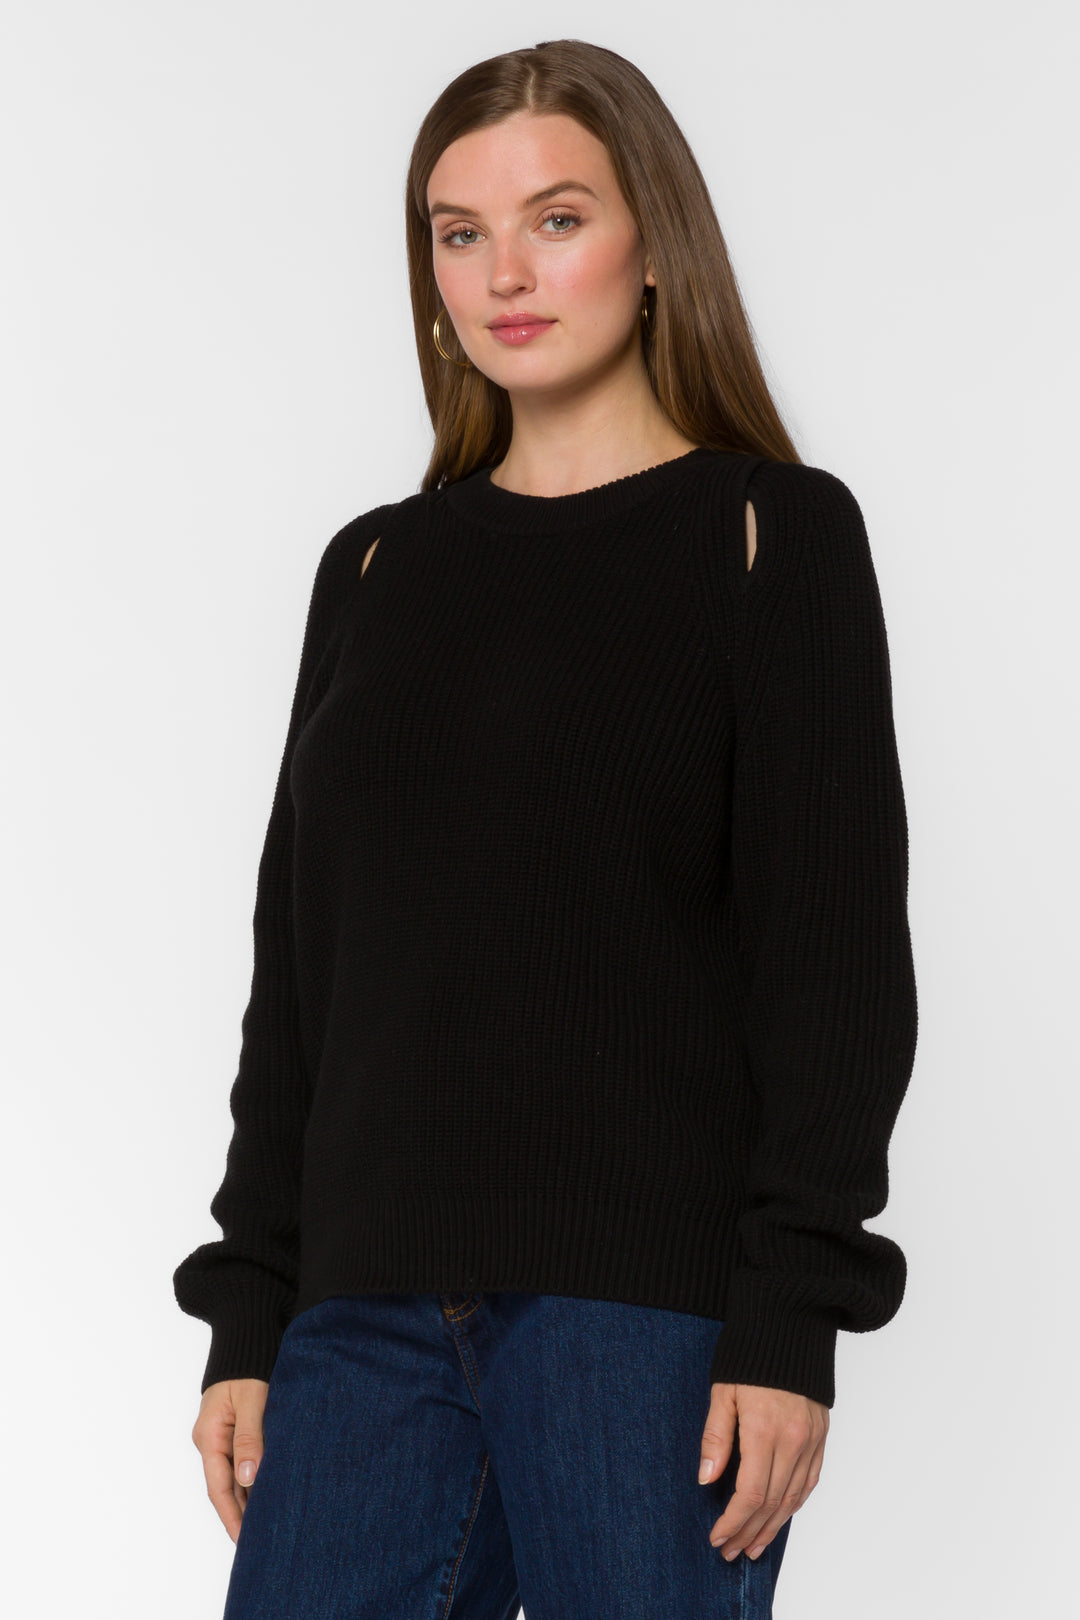 Roya Black Sweater - Sweaters - Velvet Heart Clothing